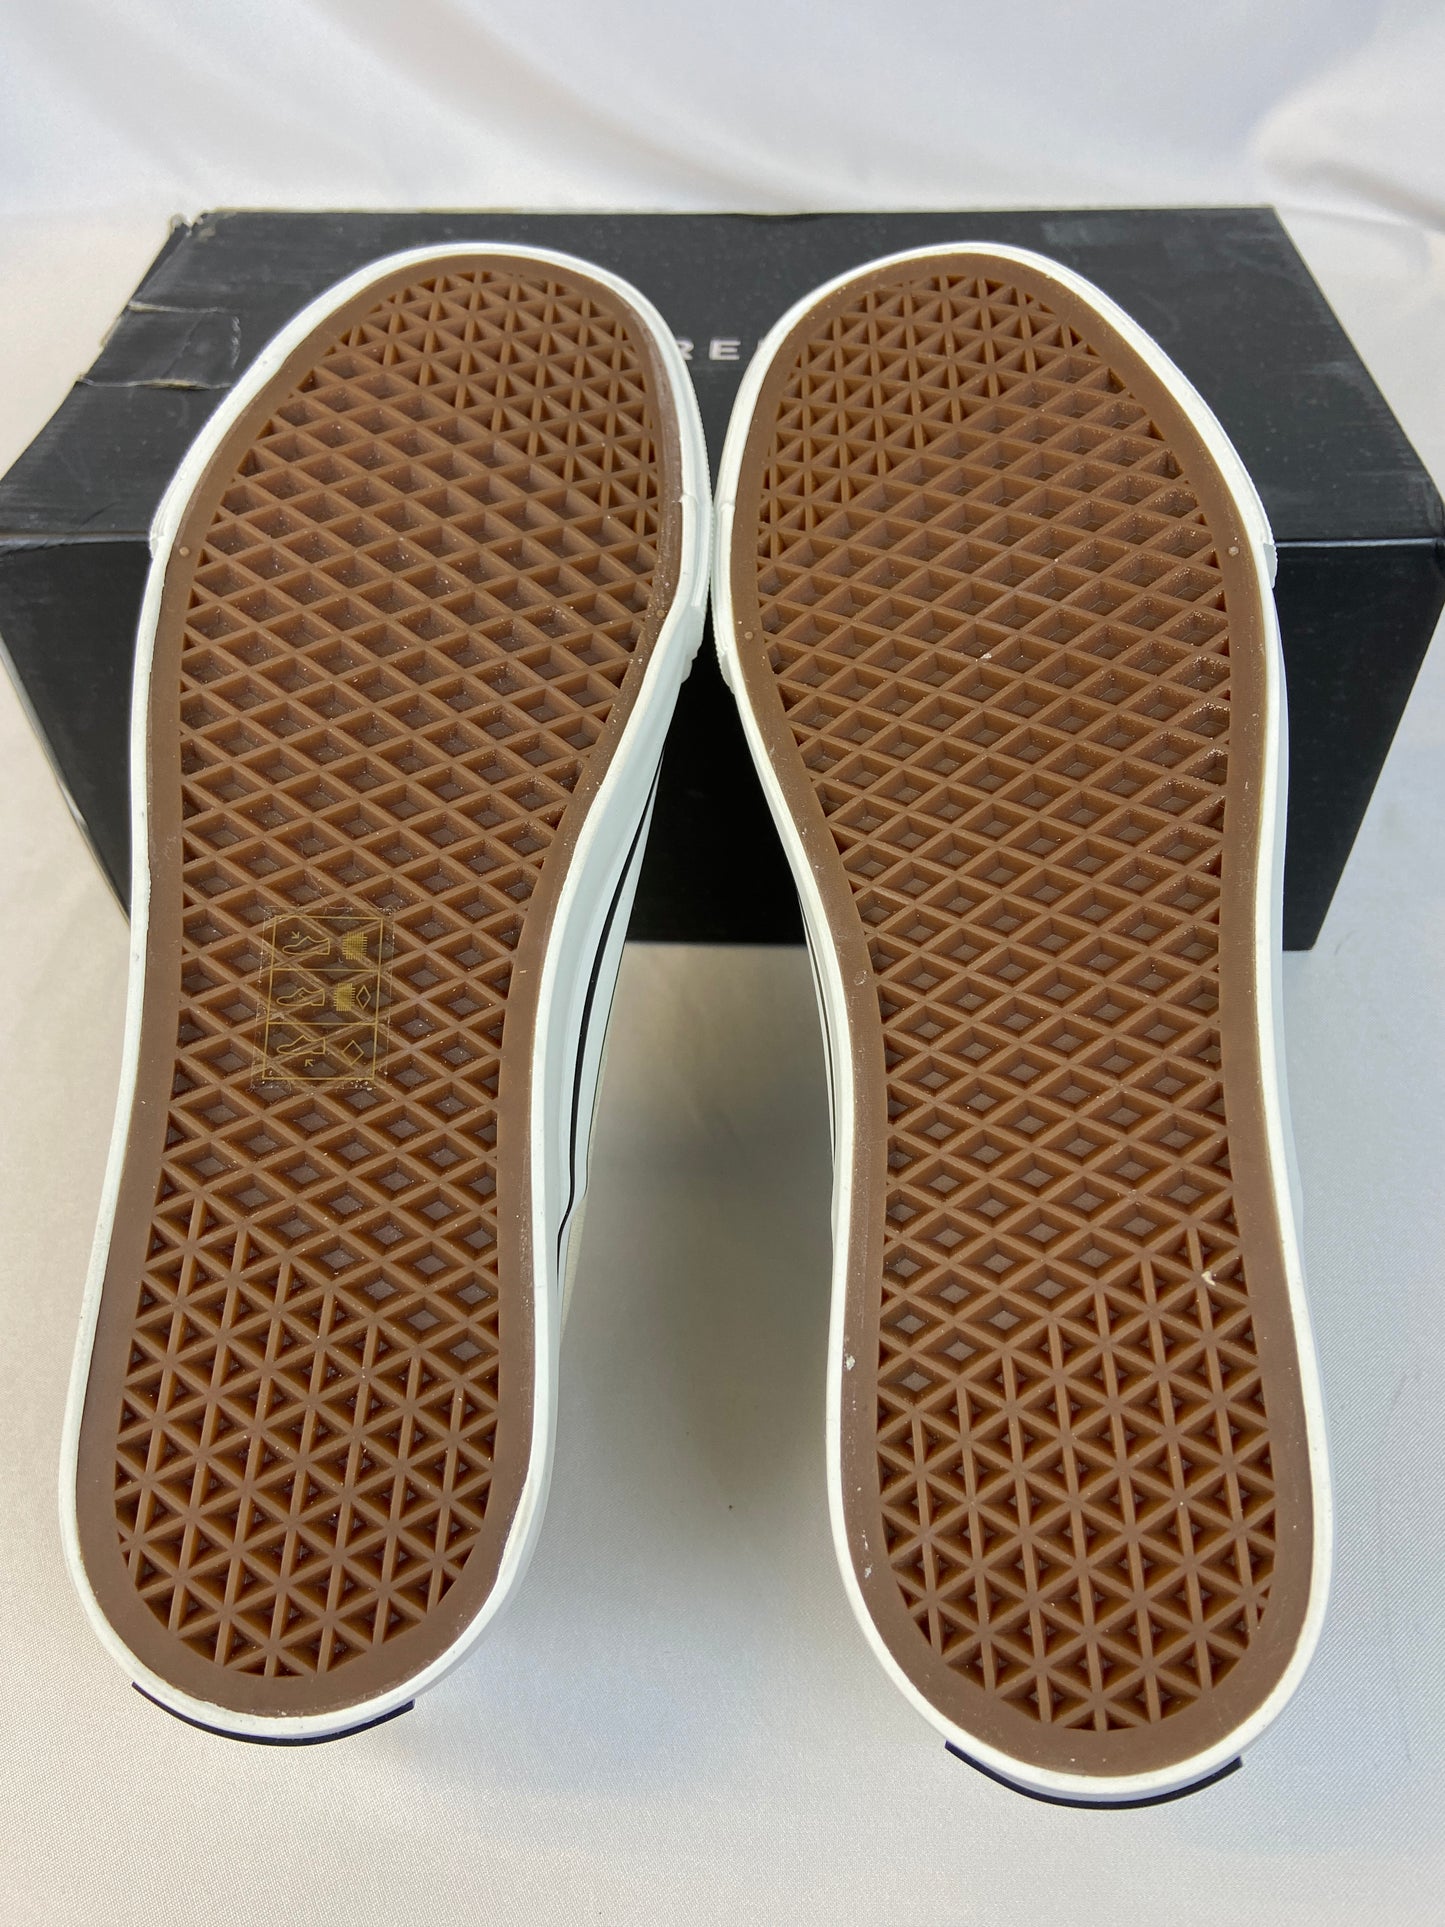 New Republic Stanton Men's Size 8 Tan Deck Shoes NWOT